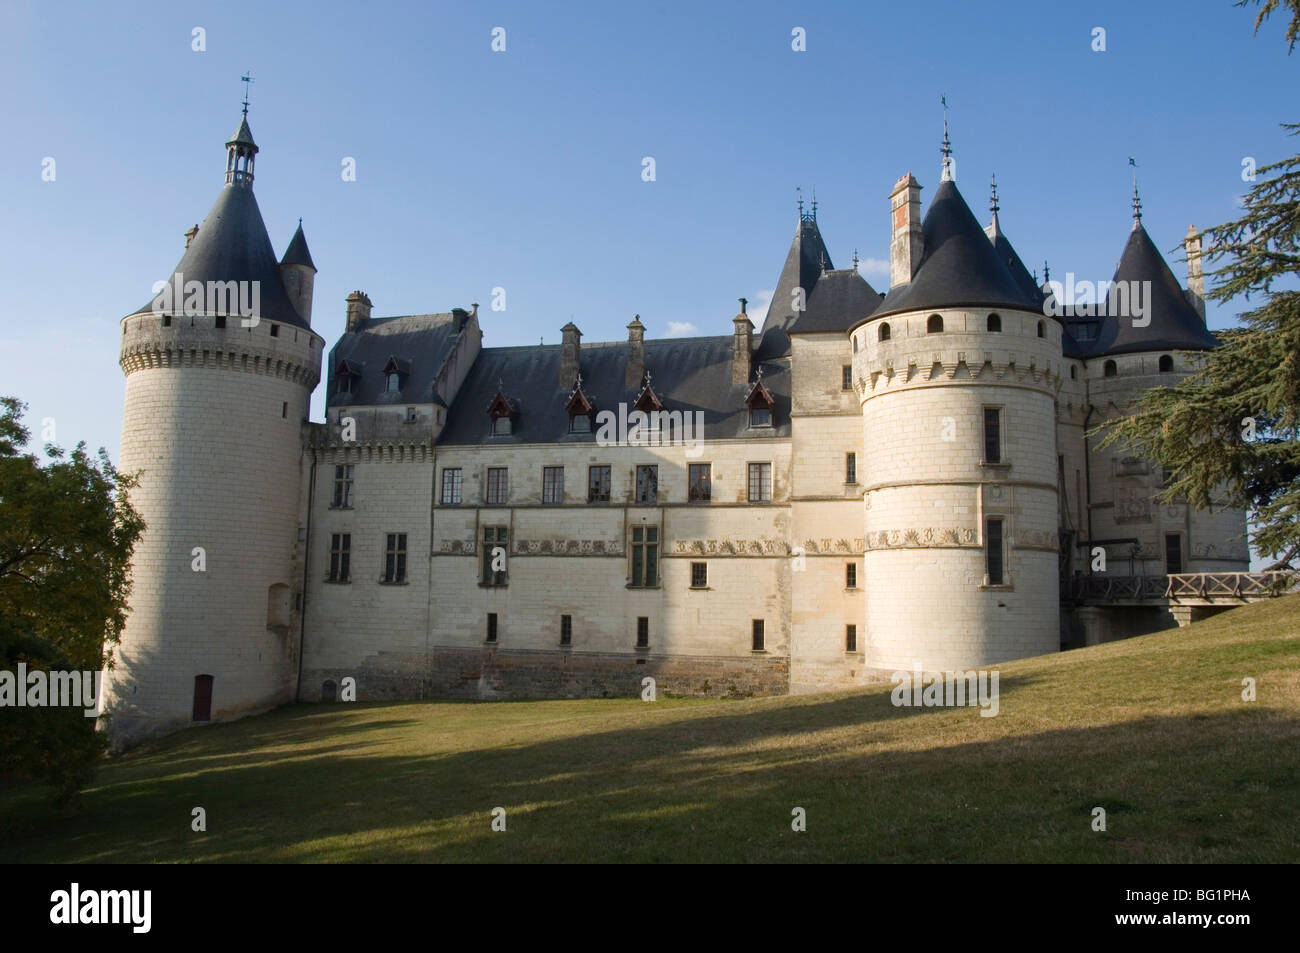 Chateau de Chaumont, Loir-et-Cher, Loire Valley, France, Europe Stock Photo